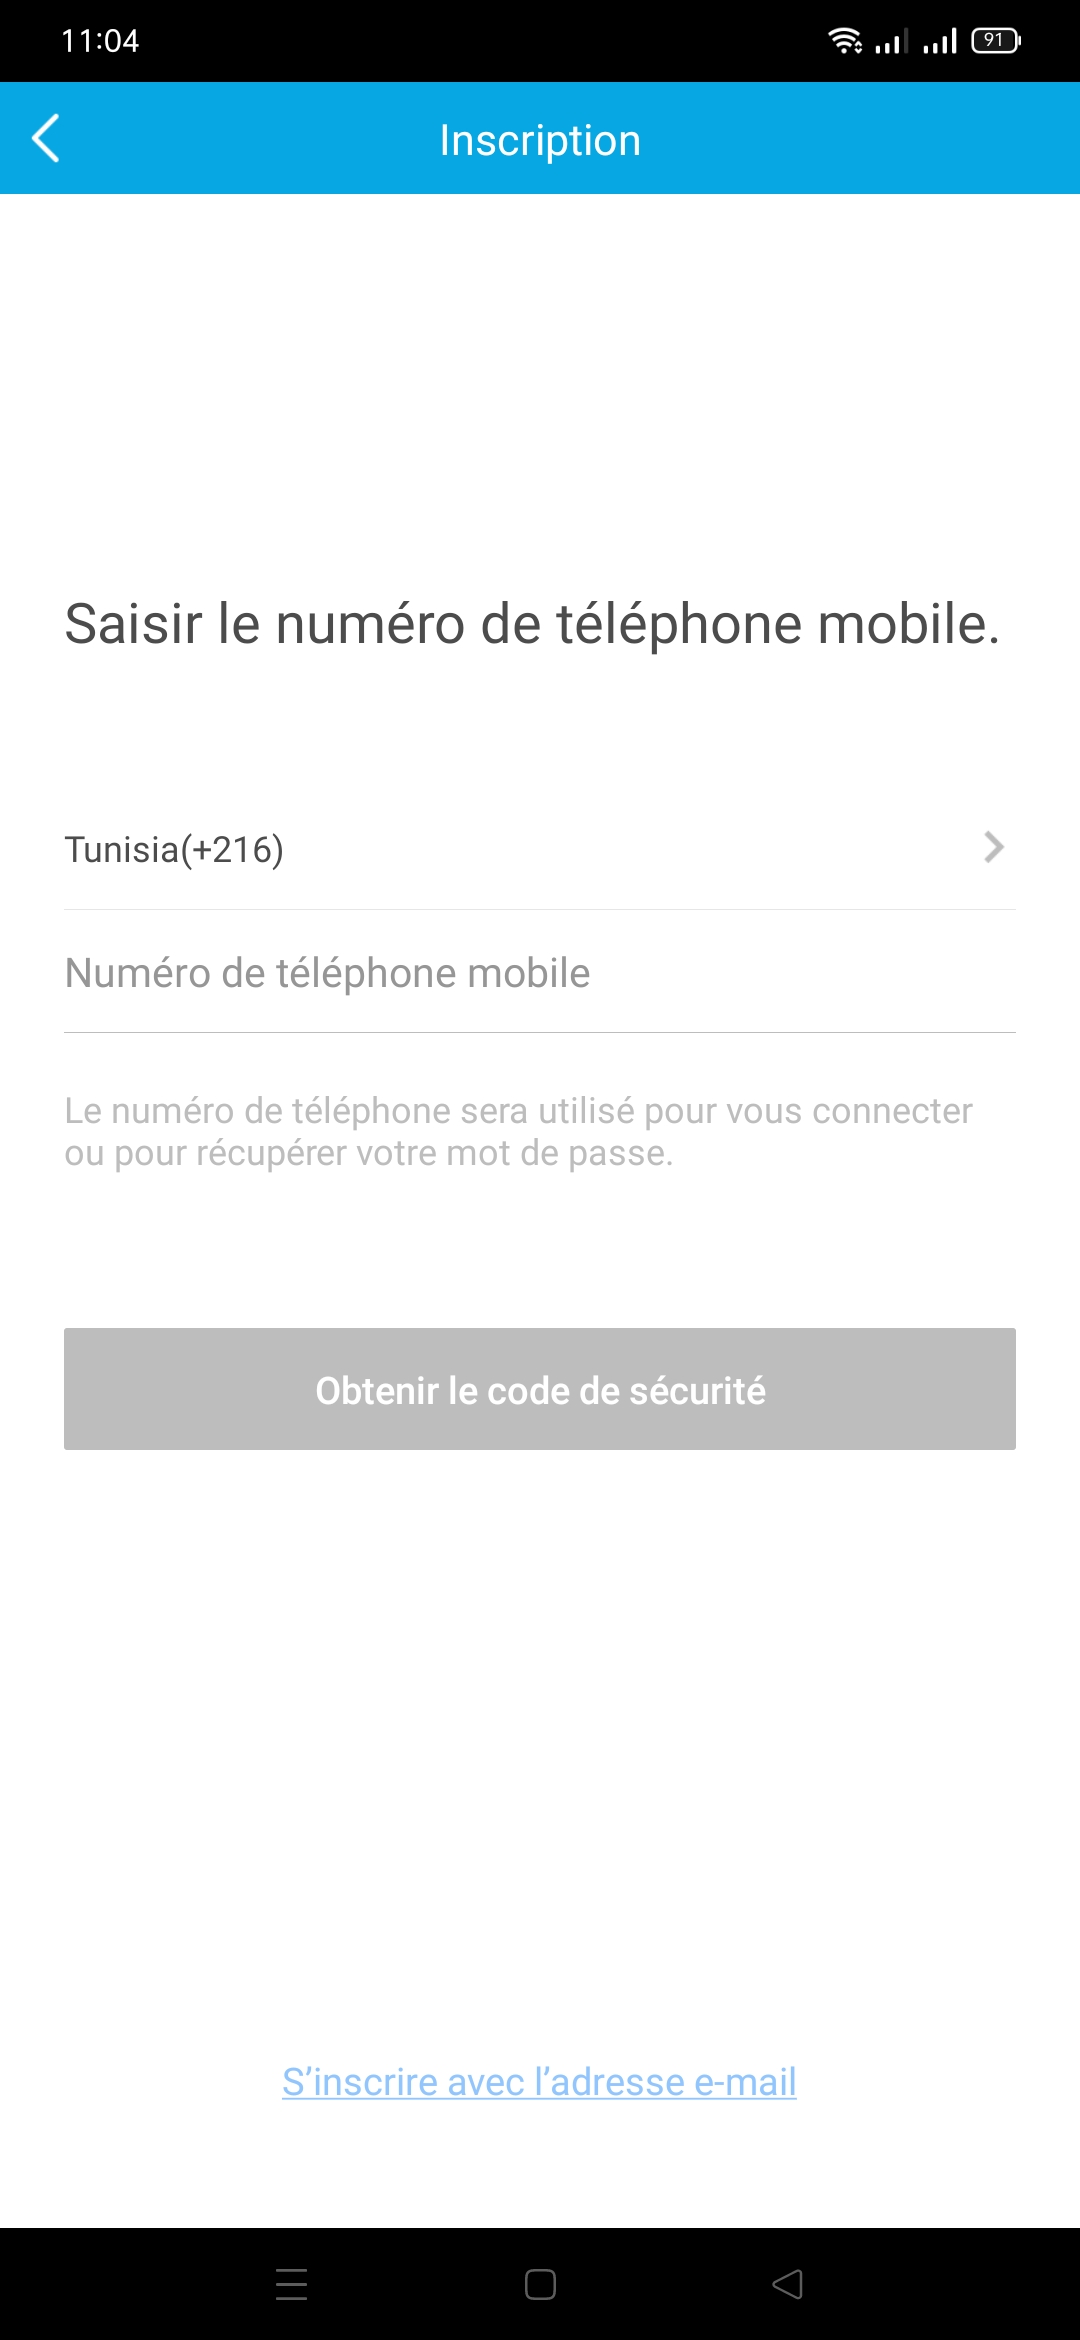 Configuration de compte HilookVision sur smartphone Tunisie Android